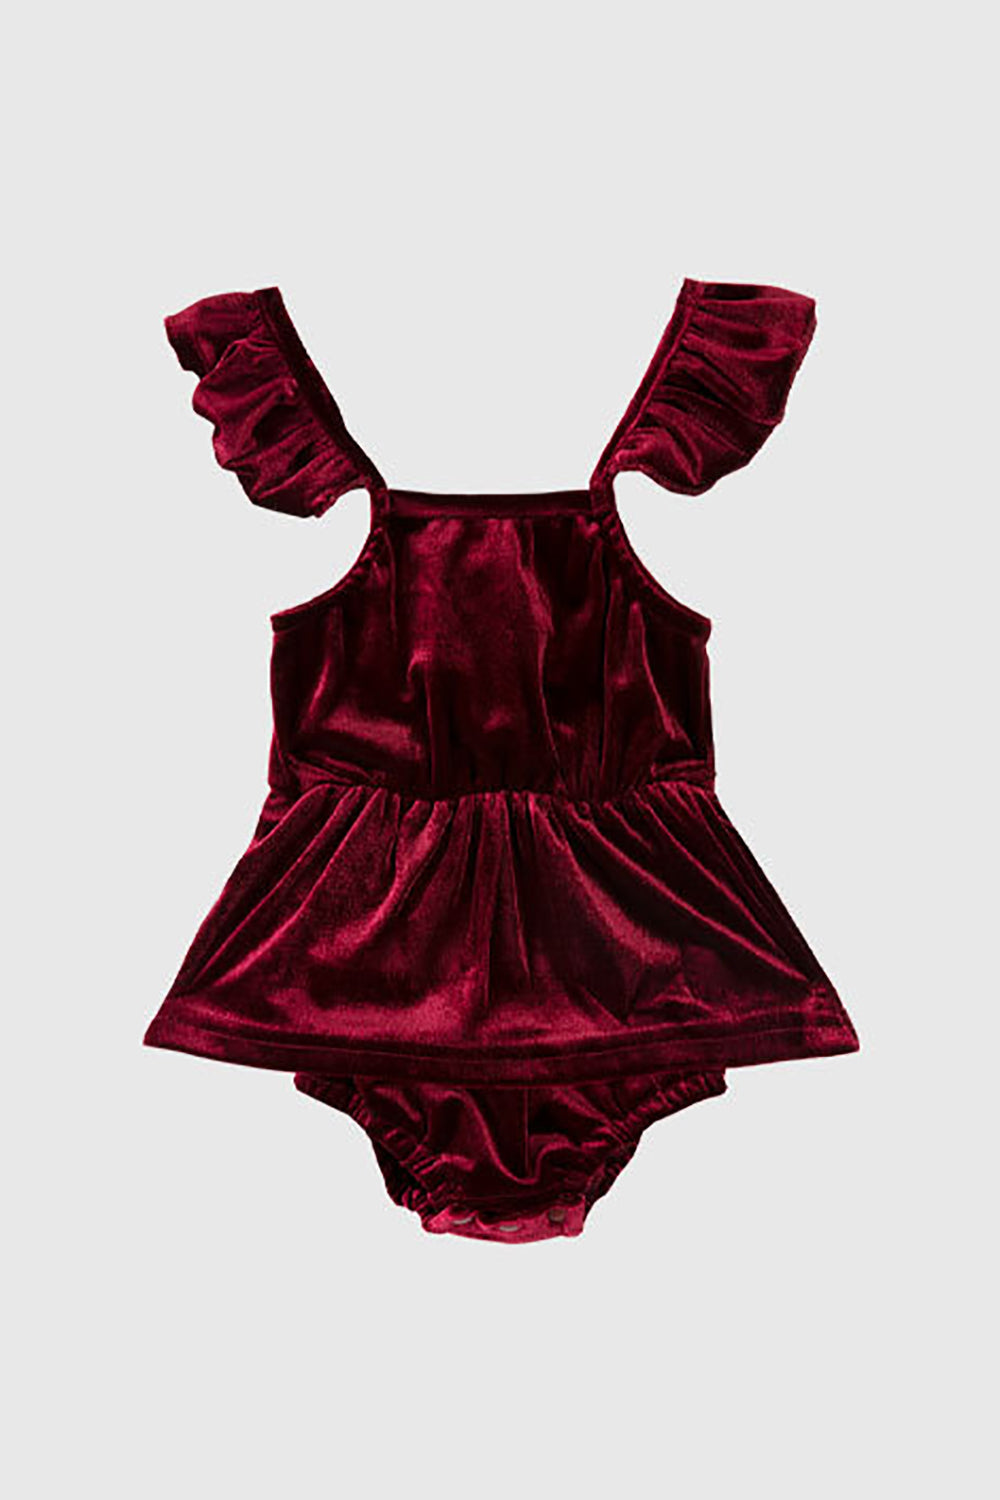 Burgundy Velvet Slip Dresses Mom Daughter Family Matching Outfits